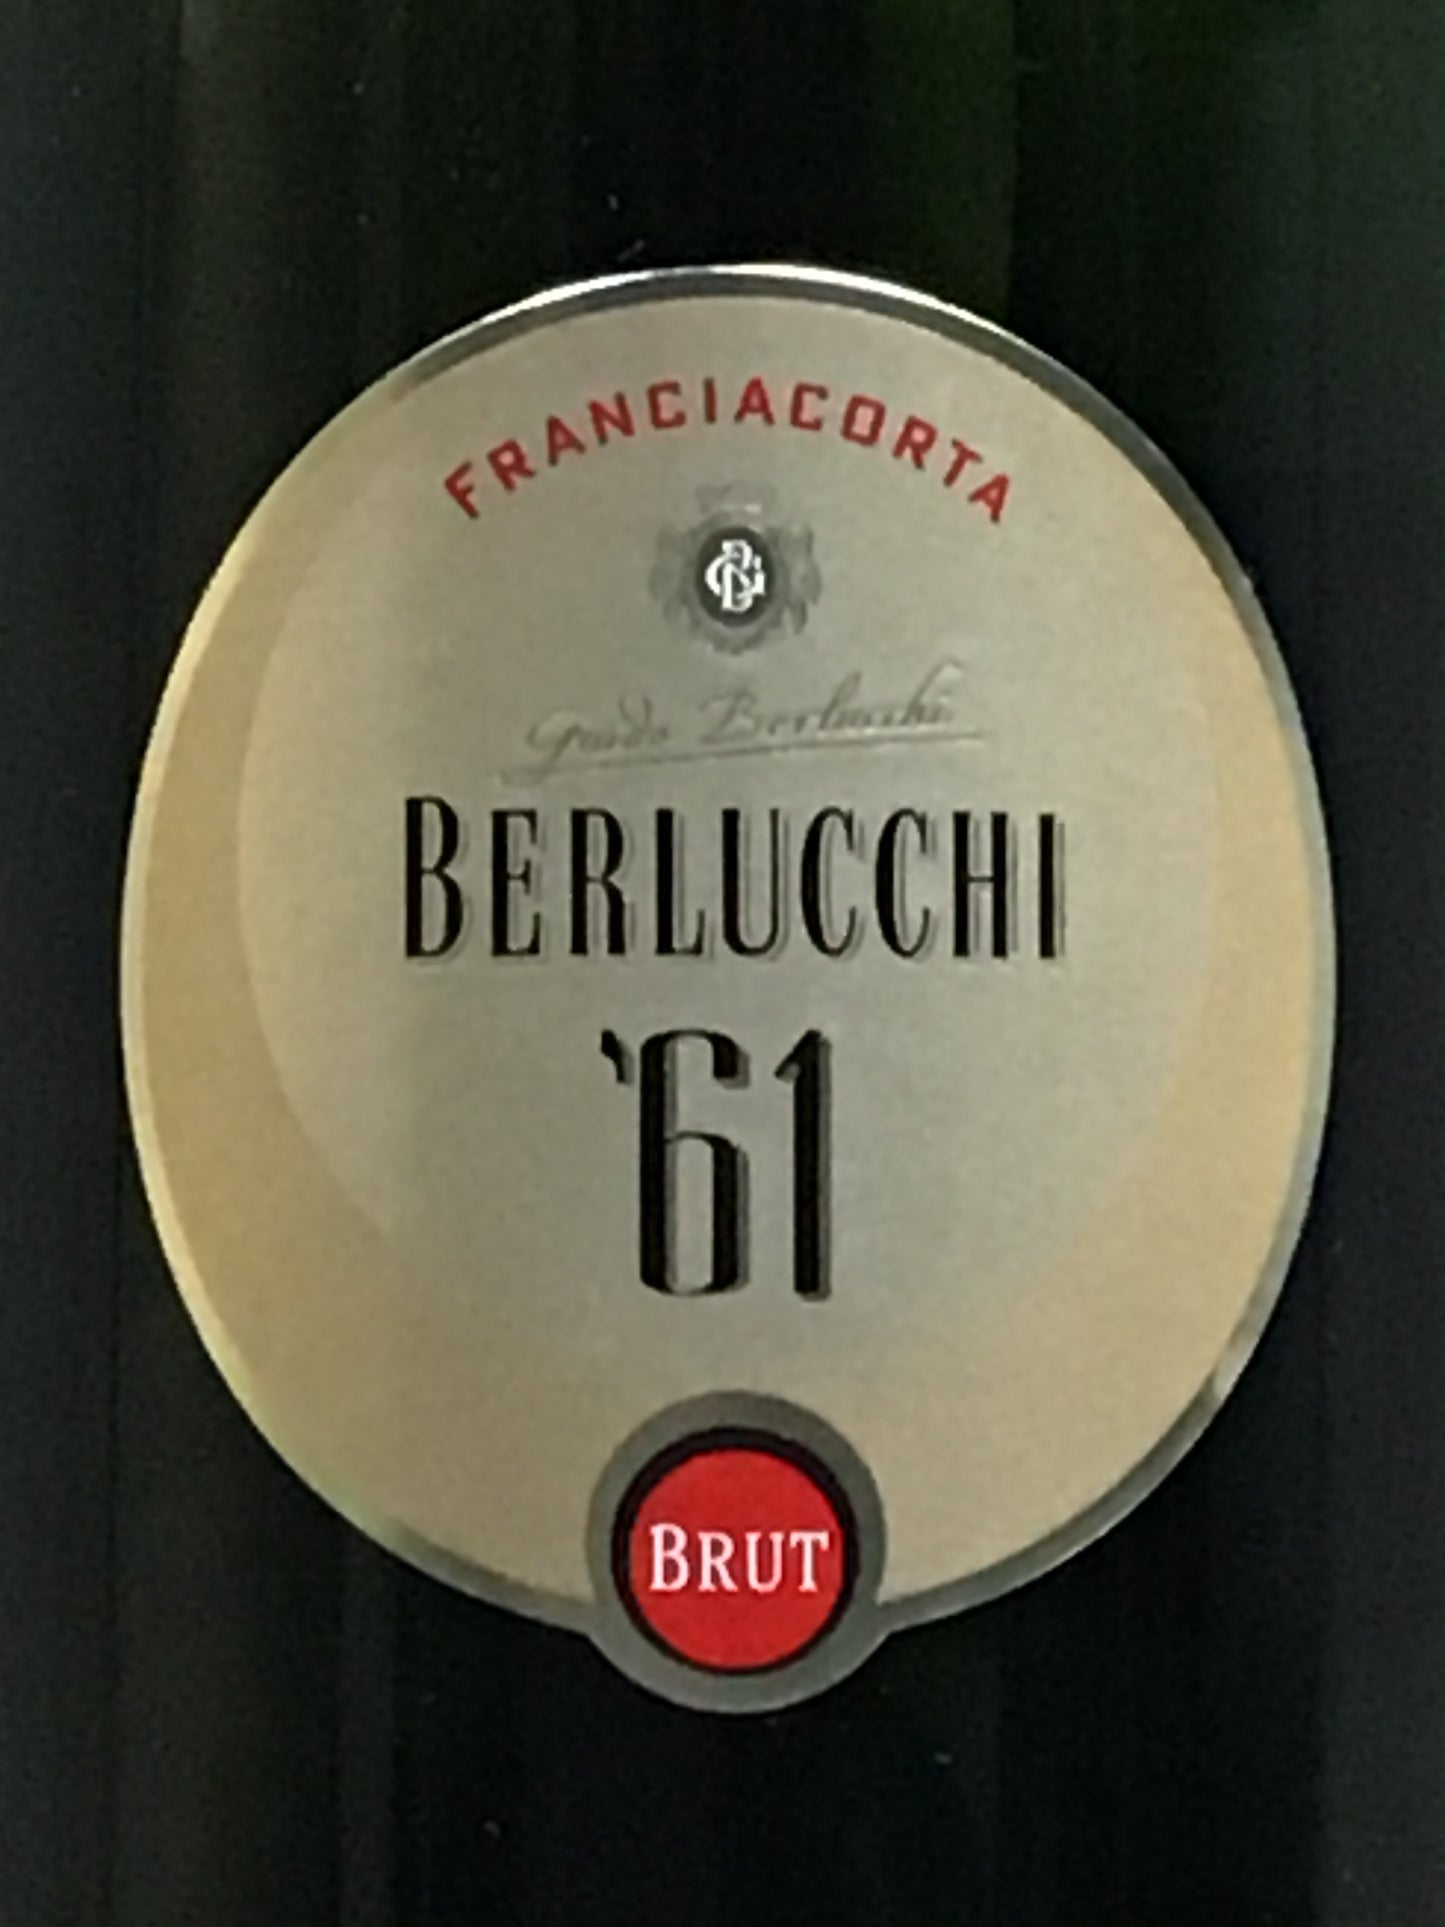 Berlucchi '61' - Franciacorta Brut